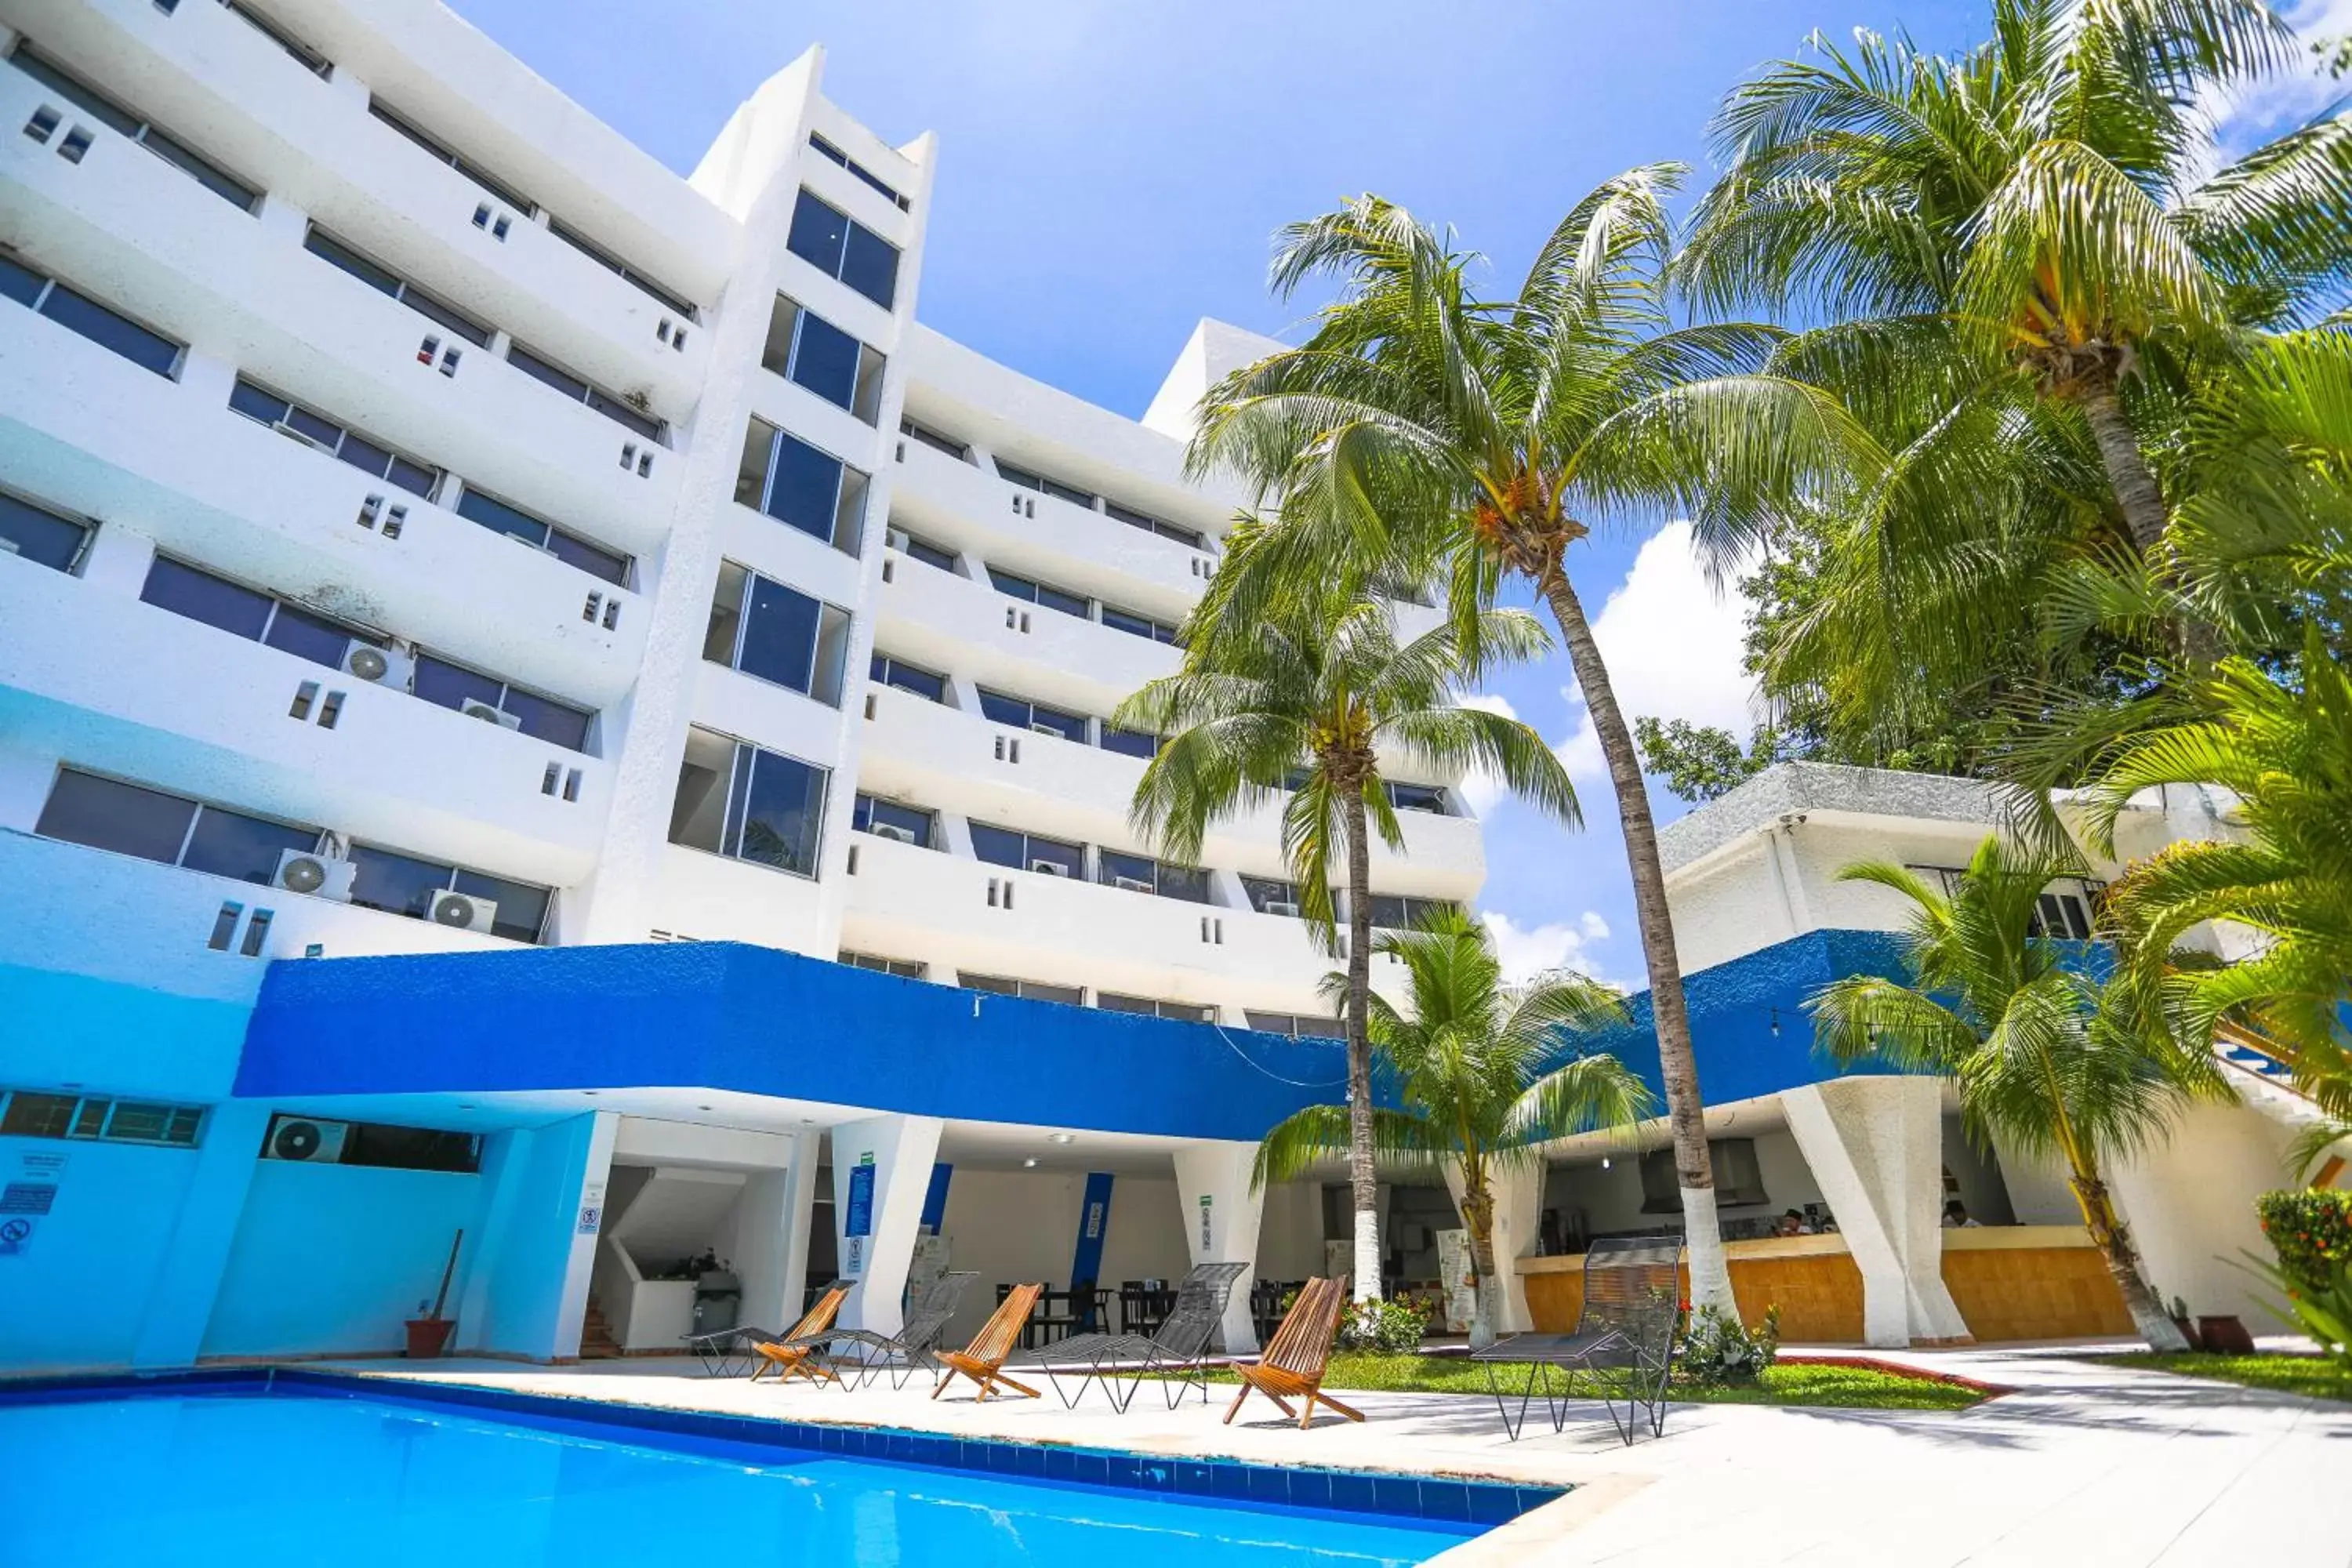 Swimming Pool in Hotel Caribe Internacional Cancun